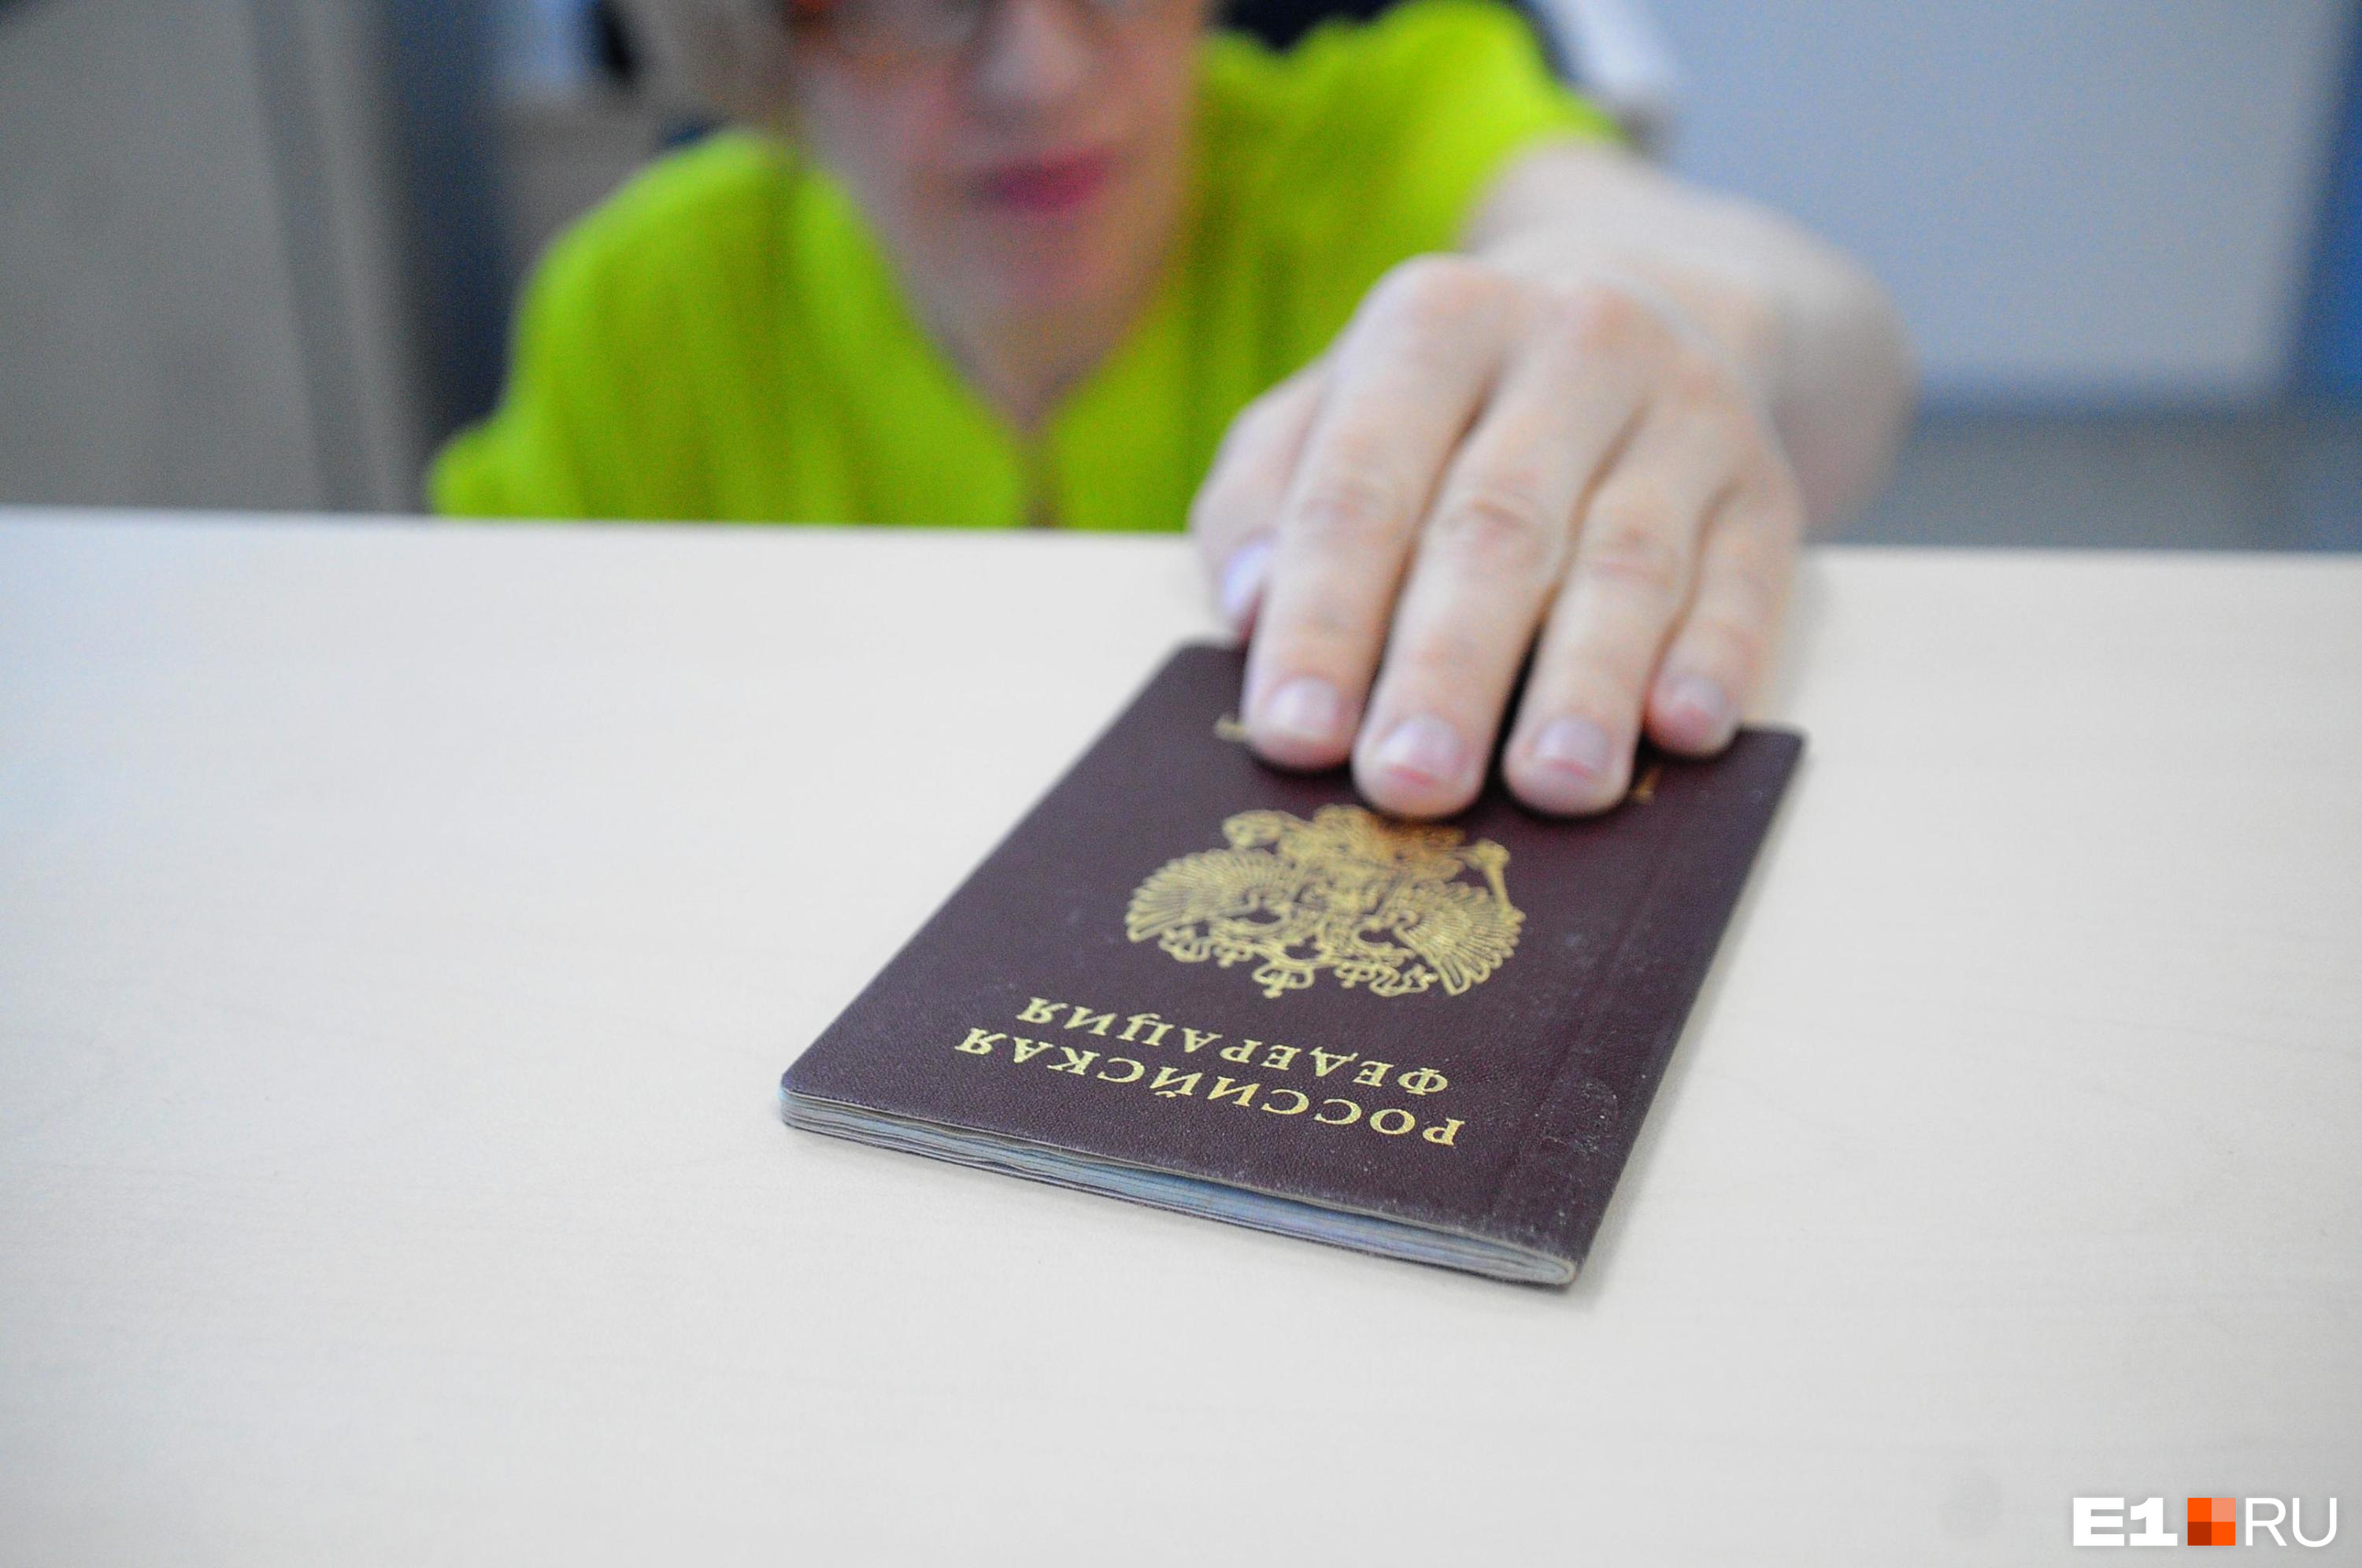 Екатеринбурженка 21 год жила с недействительным паспортом. Как это возможно?